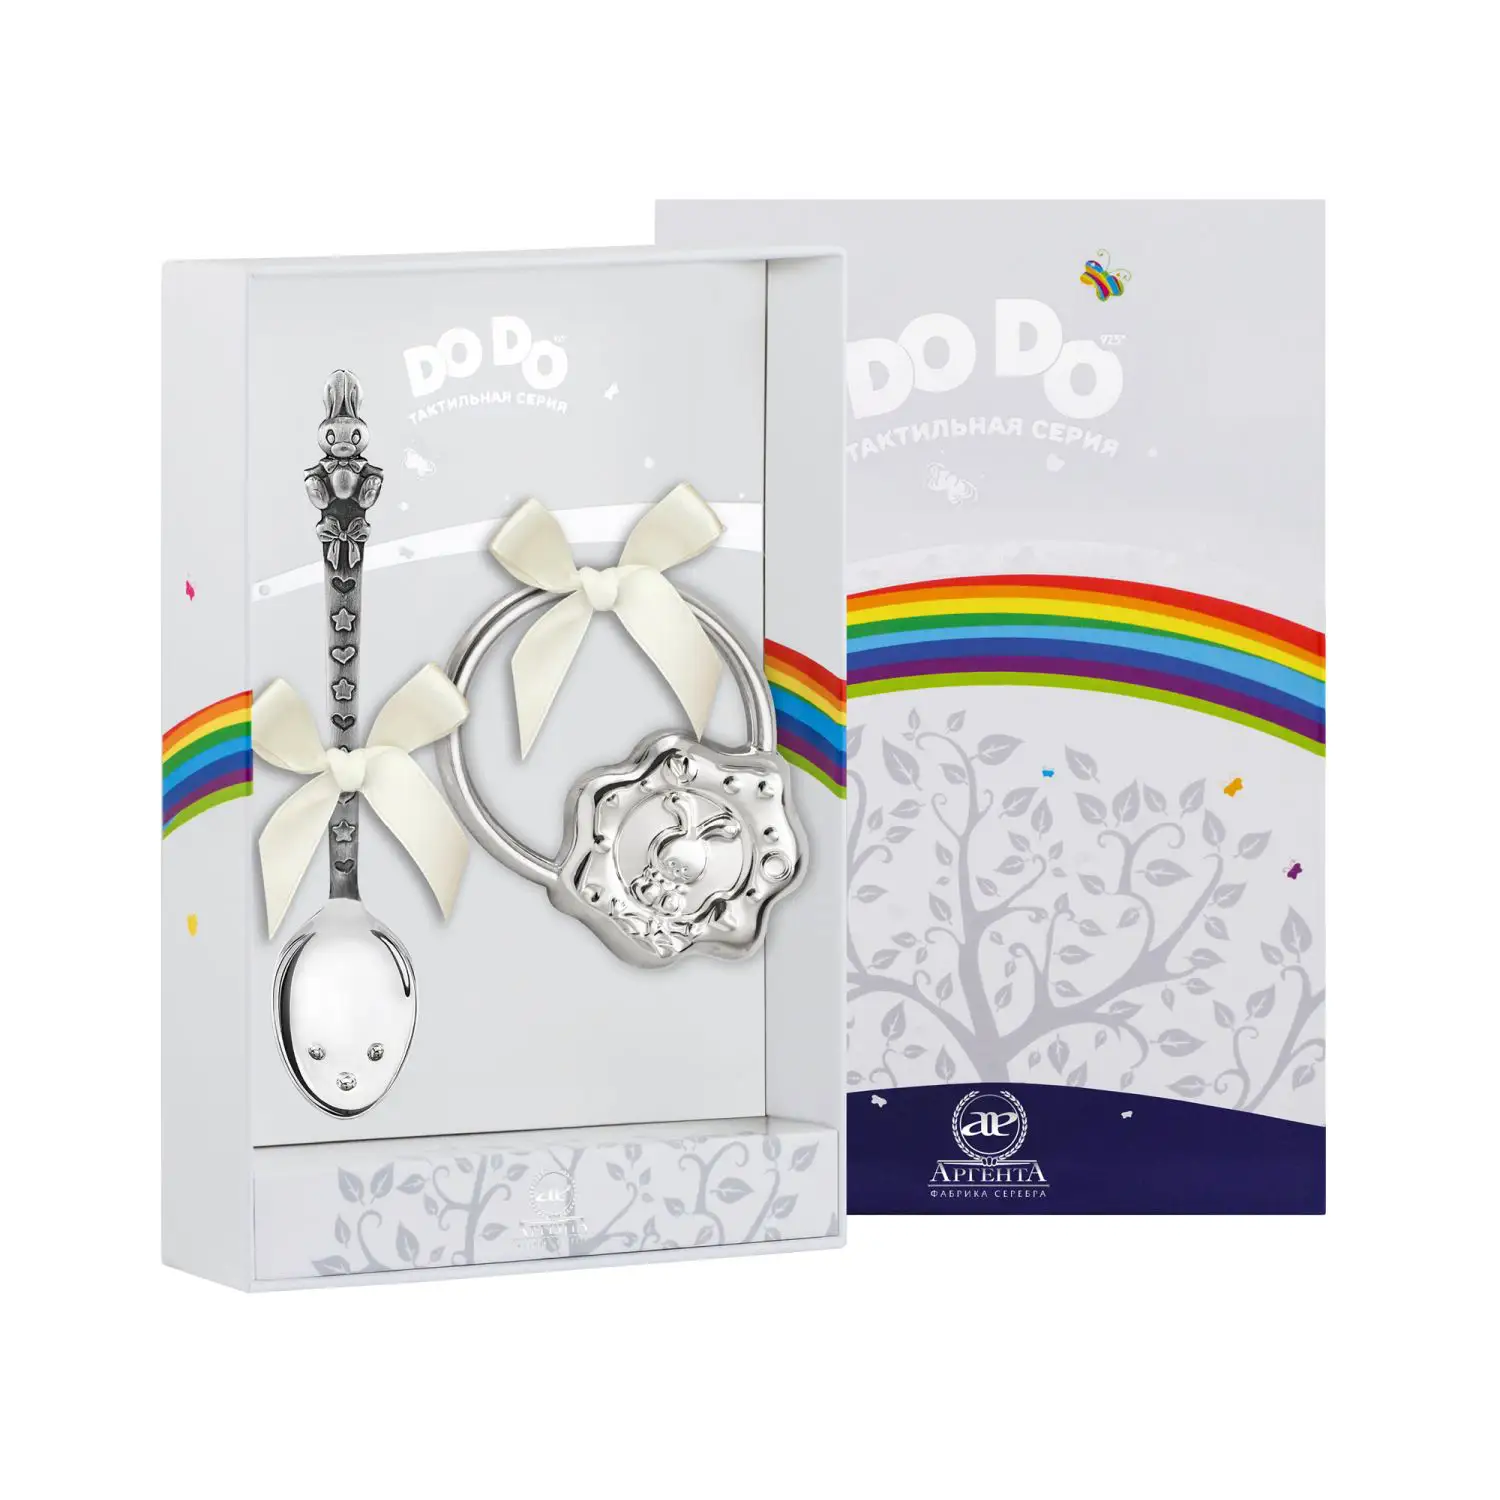 Набор для малышей DODO Зайка: ложка и погремушка (Серебро 925) набор для малышей dodo машинка ложка и погремушка серебро 925